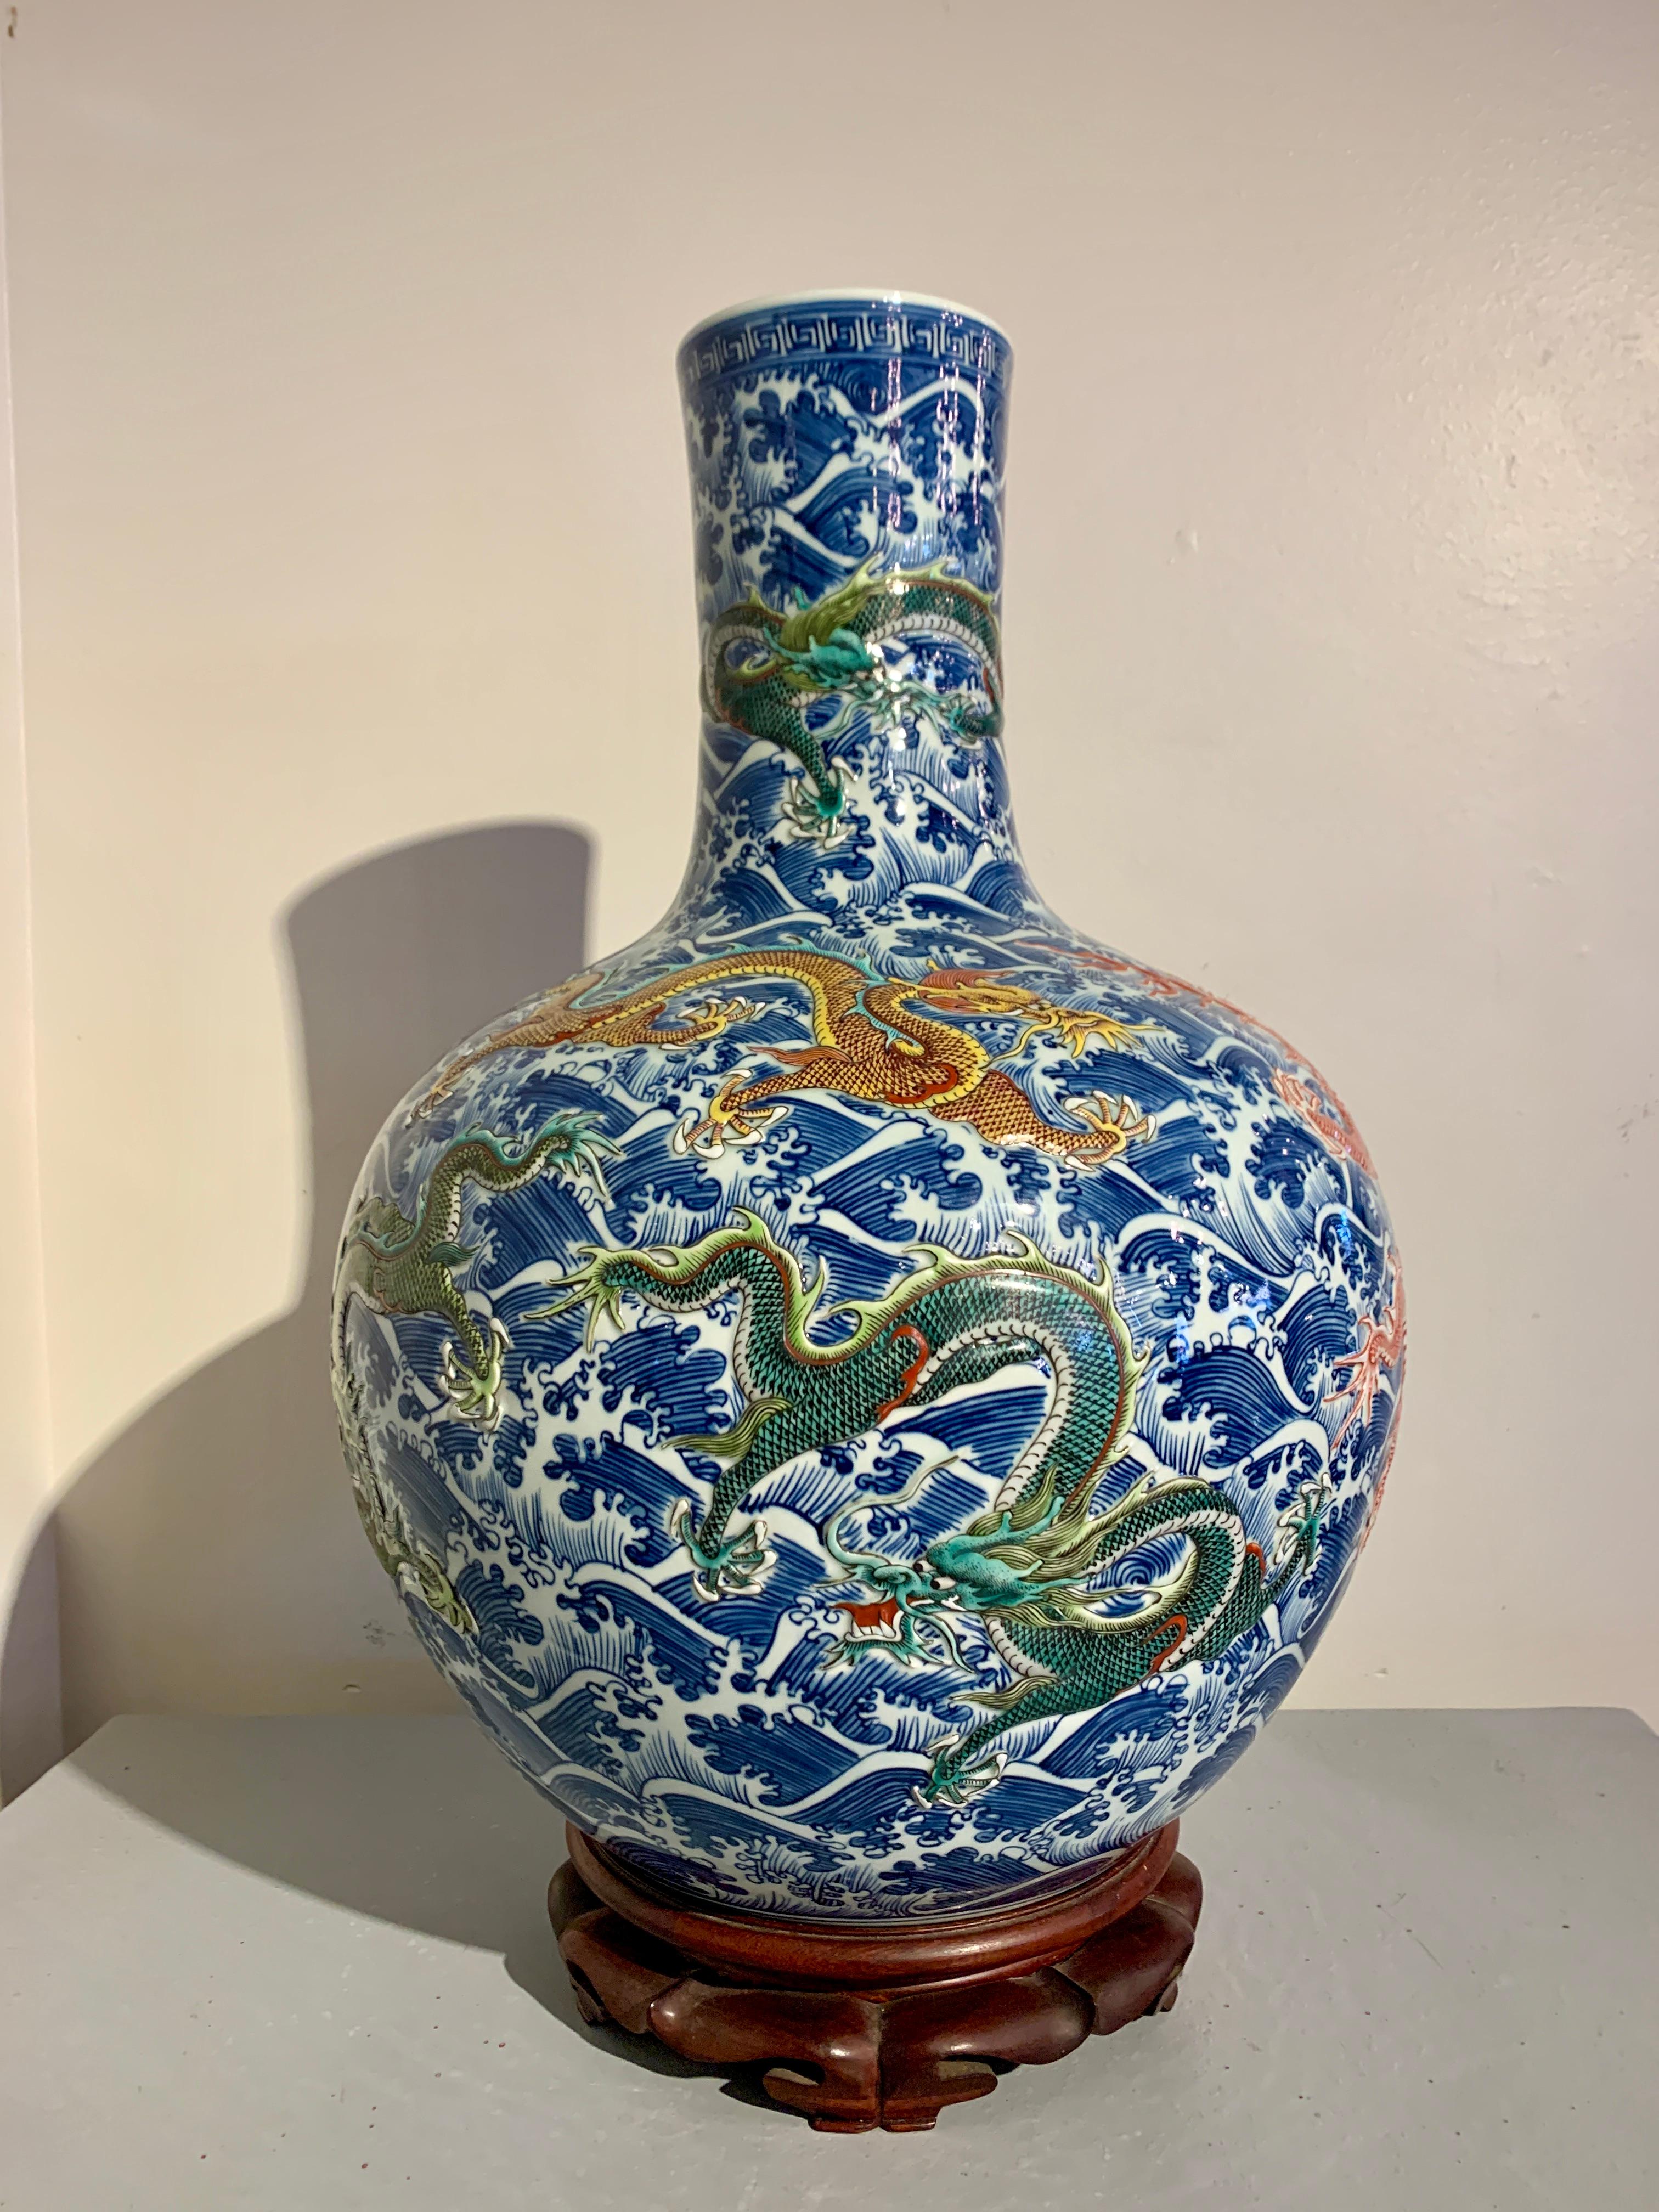 Un grand et impressionnant vase tianqiuping à neuf dragons en porcelaine chinoise, moderne, début des années 2000, Chine.

Vase massif en porcelaine chinoise de forme traditionnelle tianqiuping, avec un corps globulaire robuste et un haut col